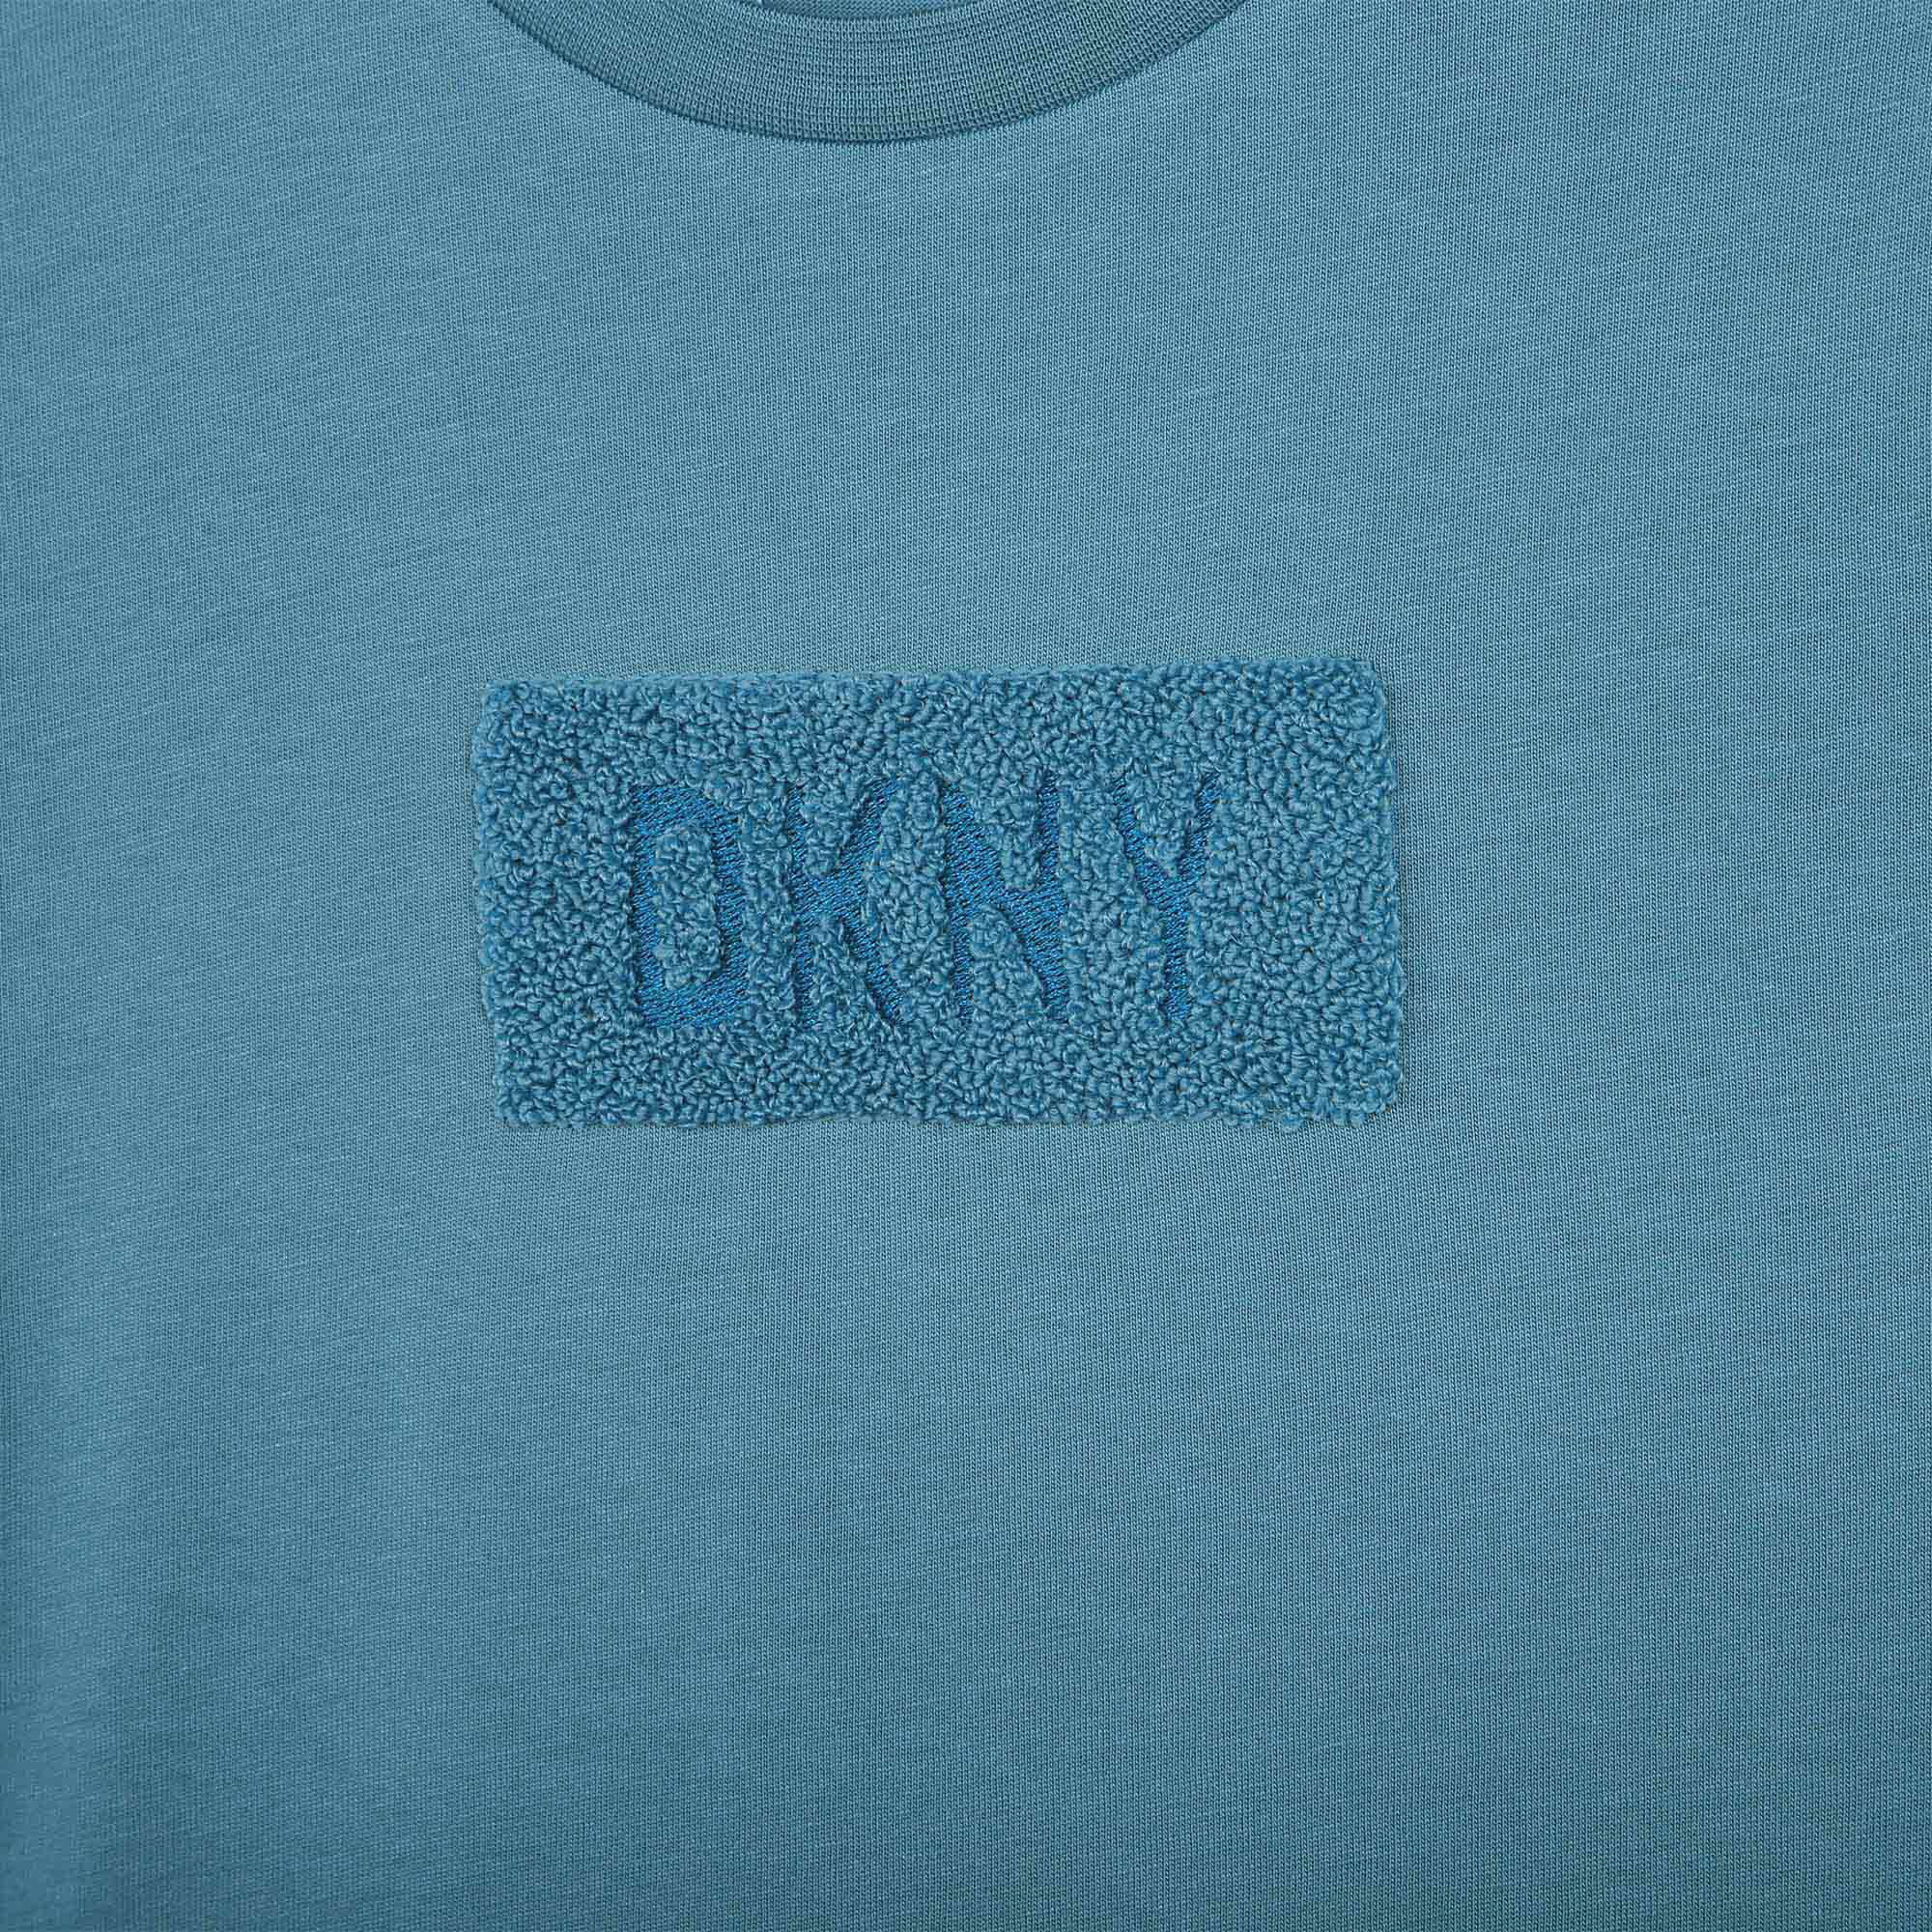 T-shirt a maniche corte DKNY Per UNISEX